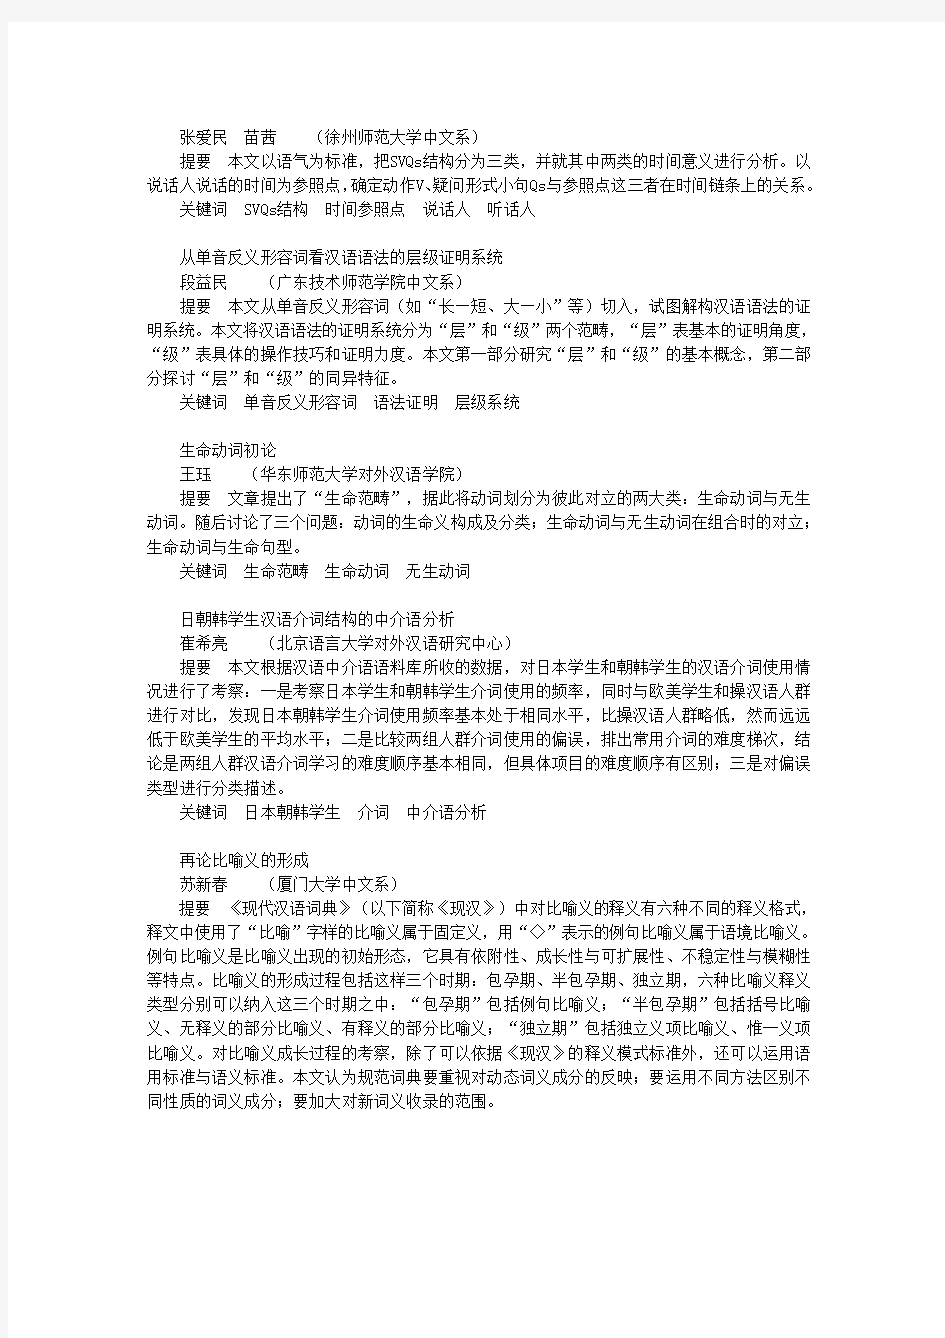 中国语言学报摘要(11)